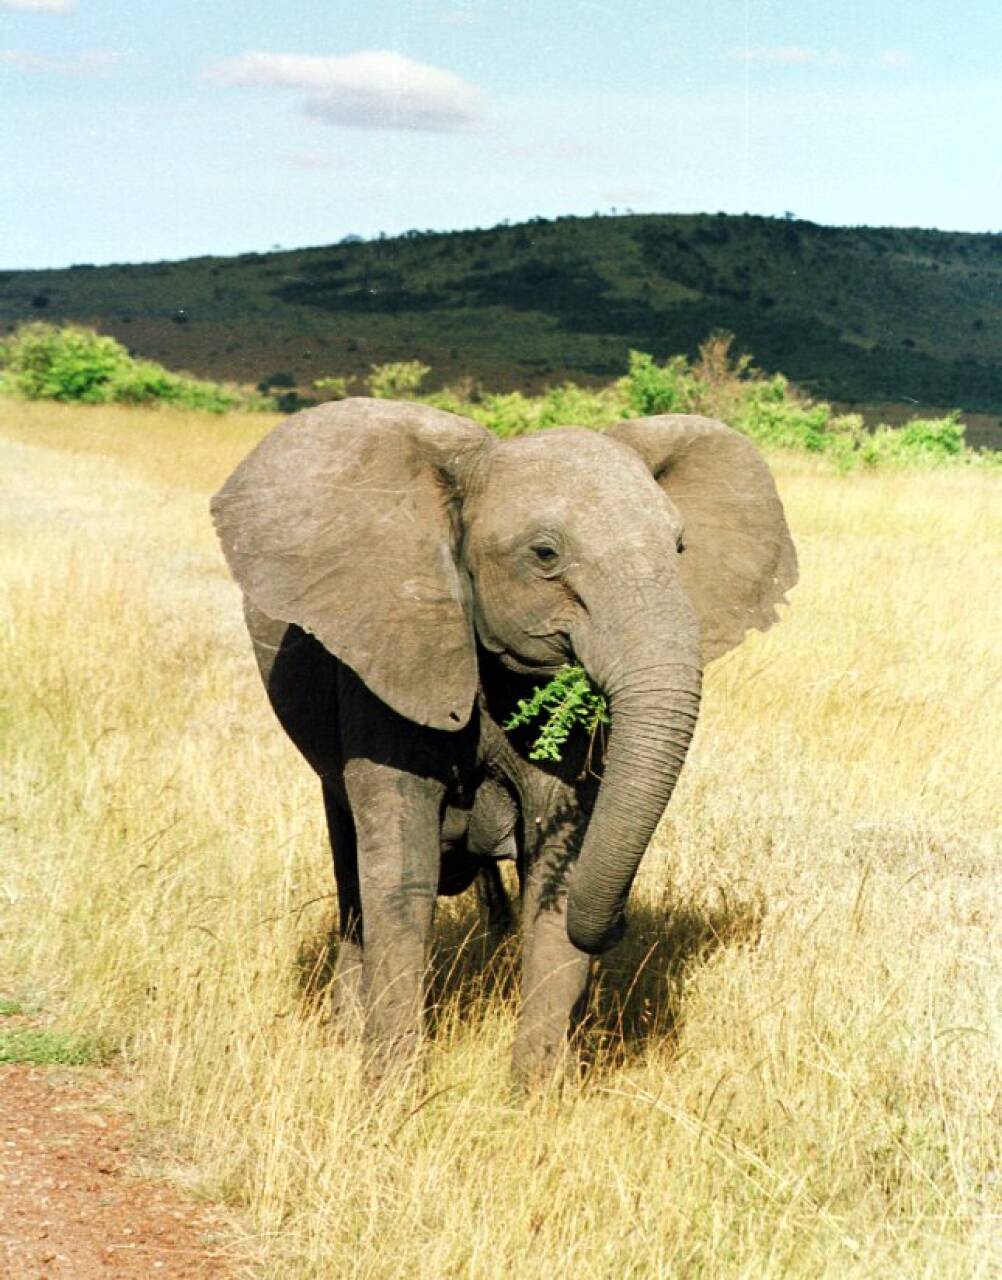 Der elefantene blir borte, endres vegetasjonen radikalt, som igjen endrer faunaen. Omvendt, dersom elefantbestanden i et område vokser raskt, vil det også skje store endringer, slik det skjedde i Tsavo nasjonalpark i Kenya på 1960-tallet. Her en elefant på beite i Masai Mara naturreservat i Kenya. Foto: NTB